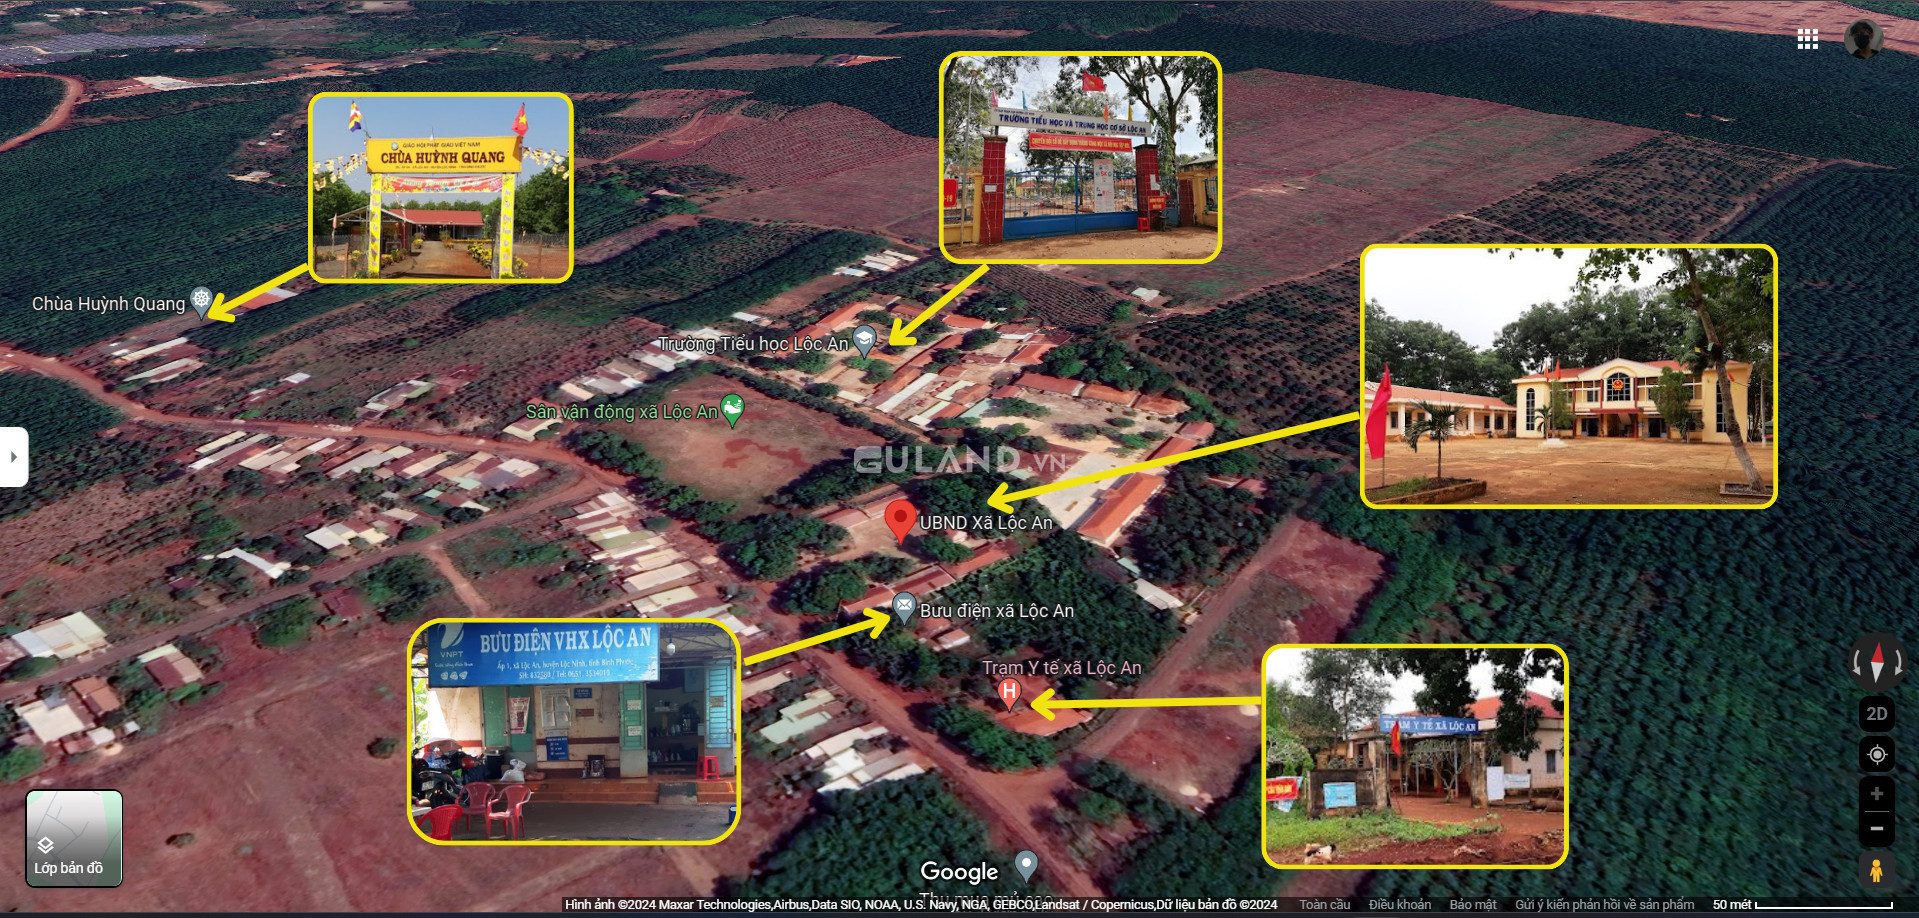 Bán gấp lô đất ngay trung tâm thị trấn Lộc Ninh, đường nhựa 18m, 300m² thổ cư 100m² giá chỉ 320tr.